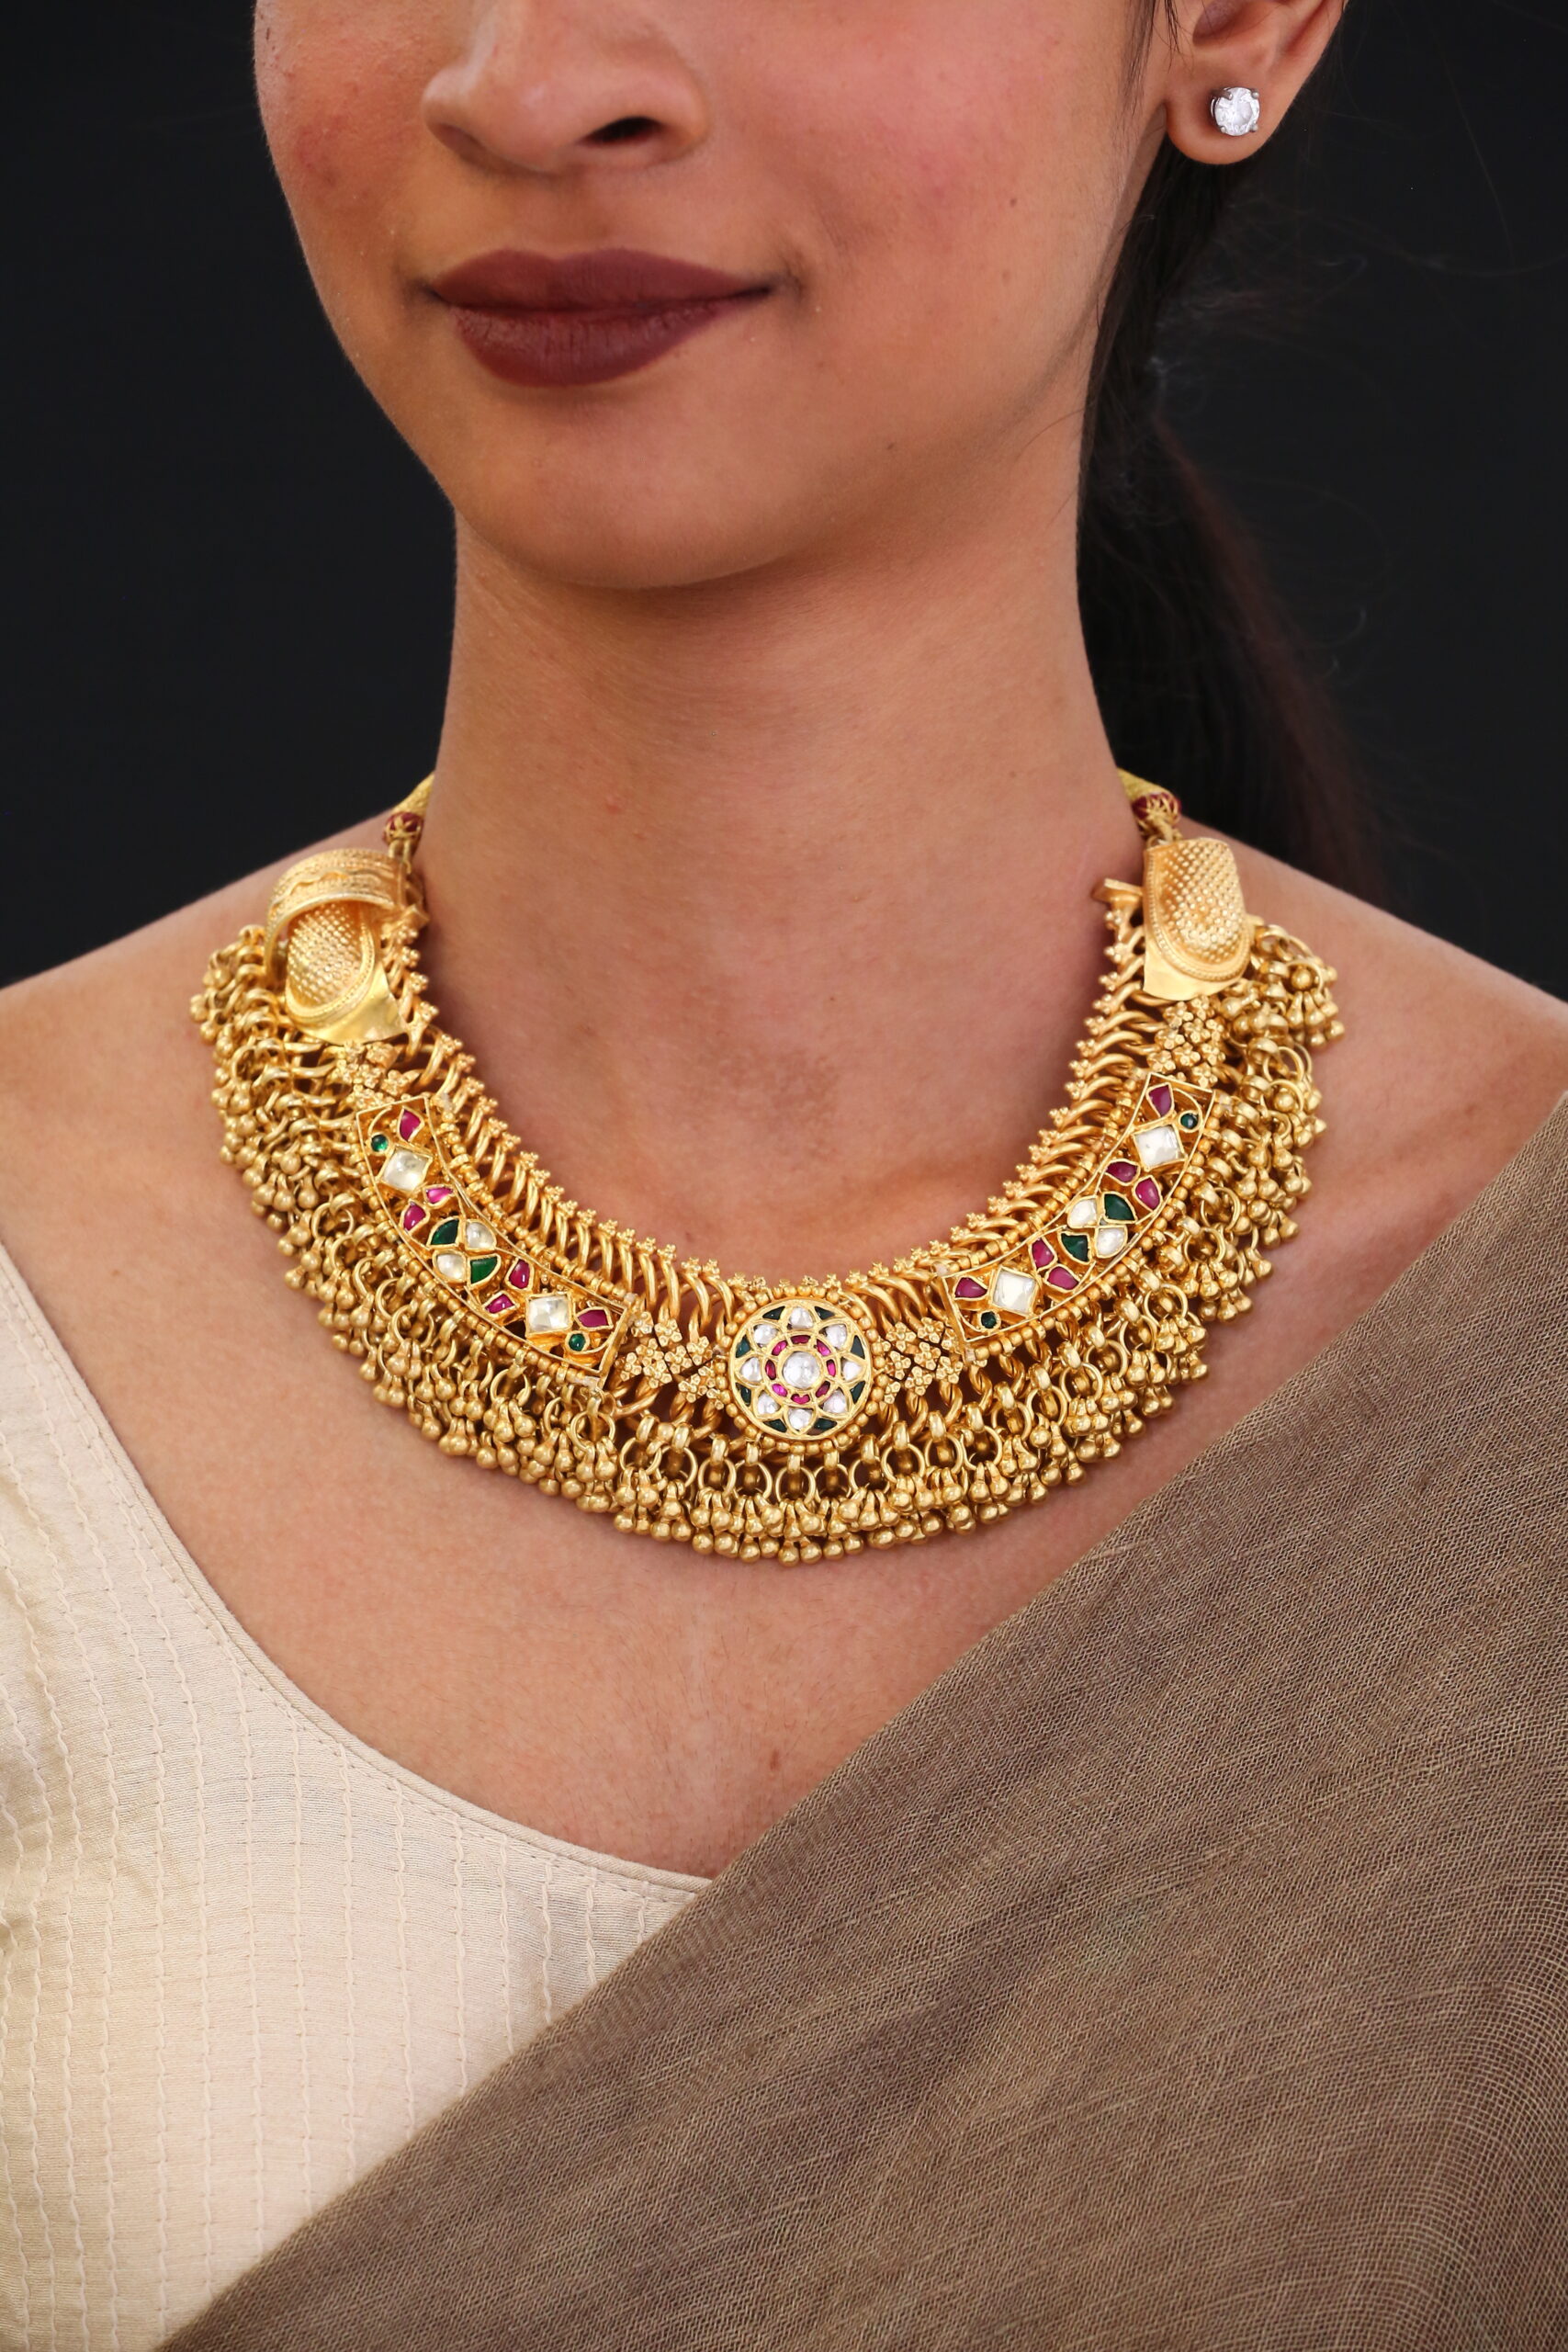 SAMs club necklace | Jewelry sales, Necklace, Jewelry